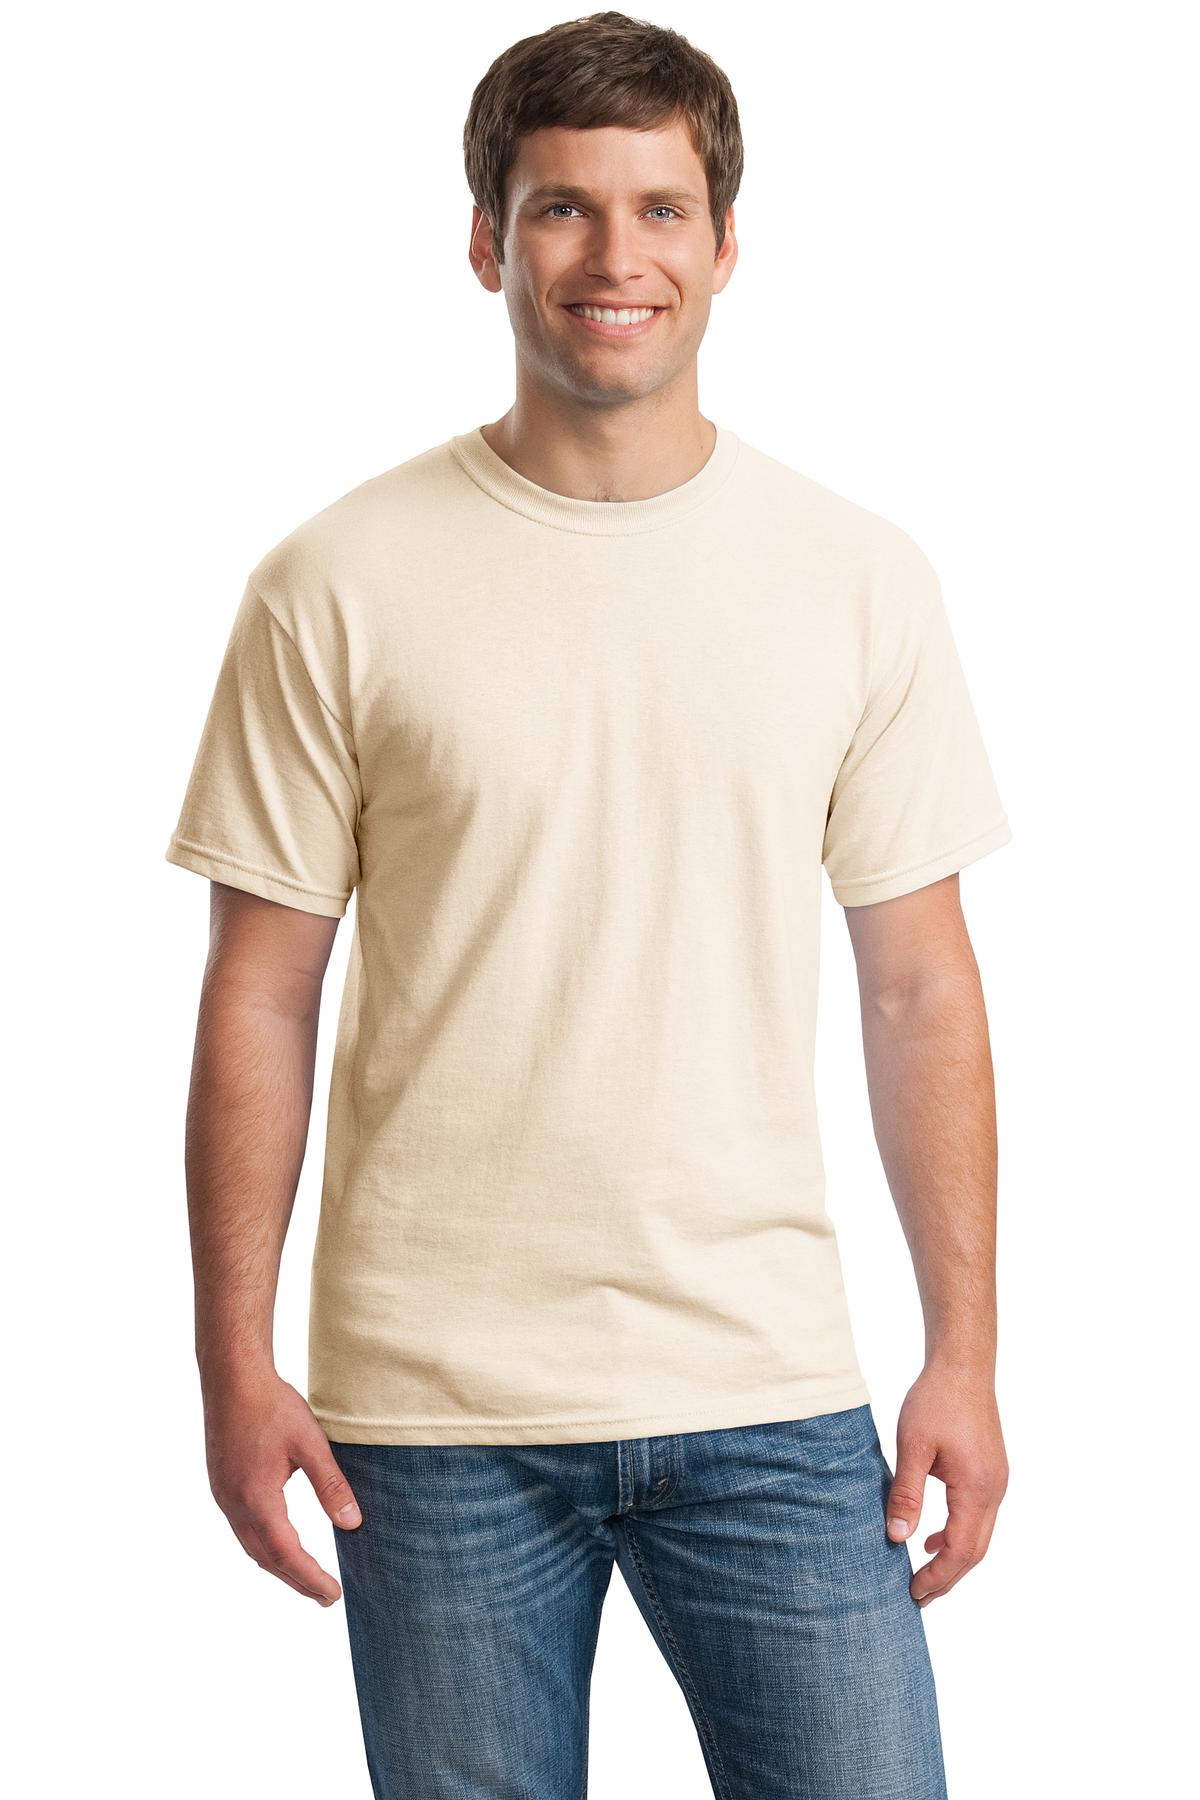 Gildan® - Heavy Cotton™ 100% Cotton T-Shirt. 5000 [Natural] - DFW Impression